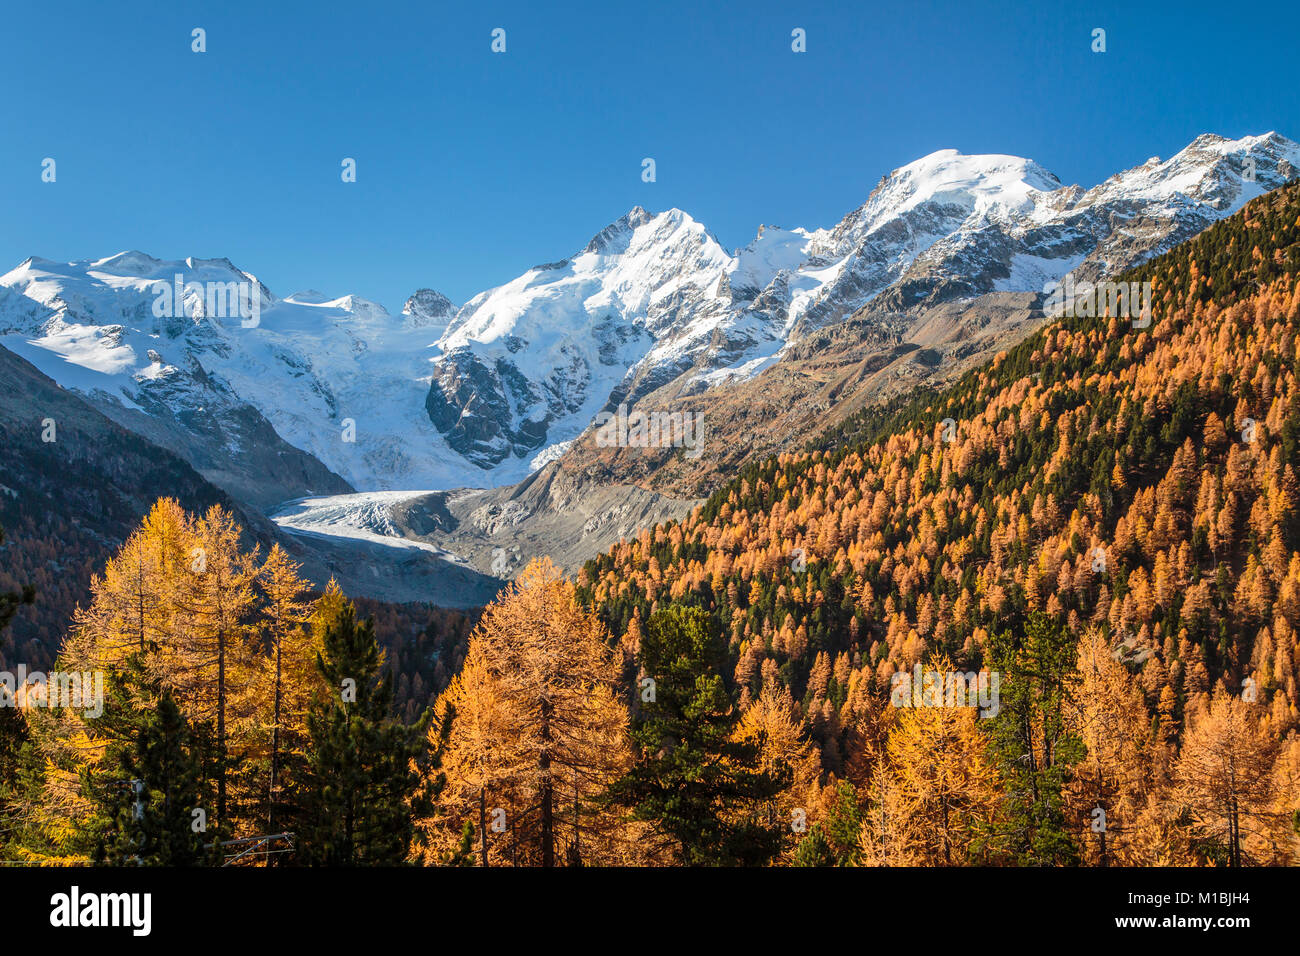 Les pics enneigés des Bernina, Glacier Morteratsch et couleur des feuilles d'automne dans la vallée de la Bernina, Suisse, Europe. Banque D'Images